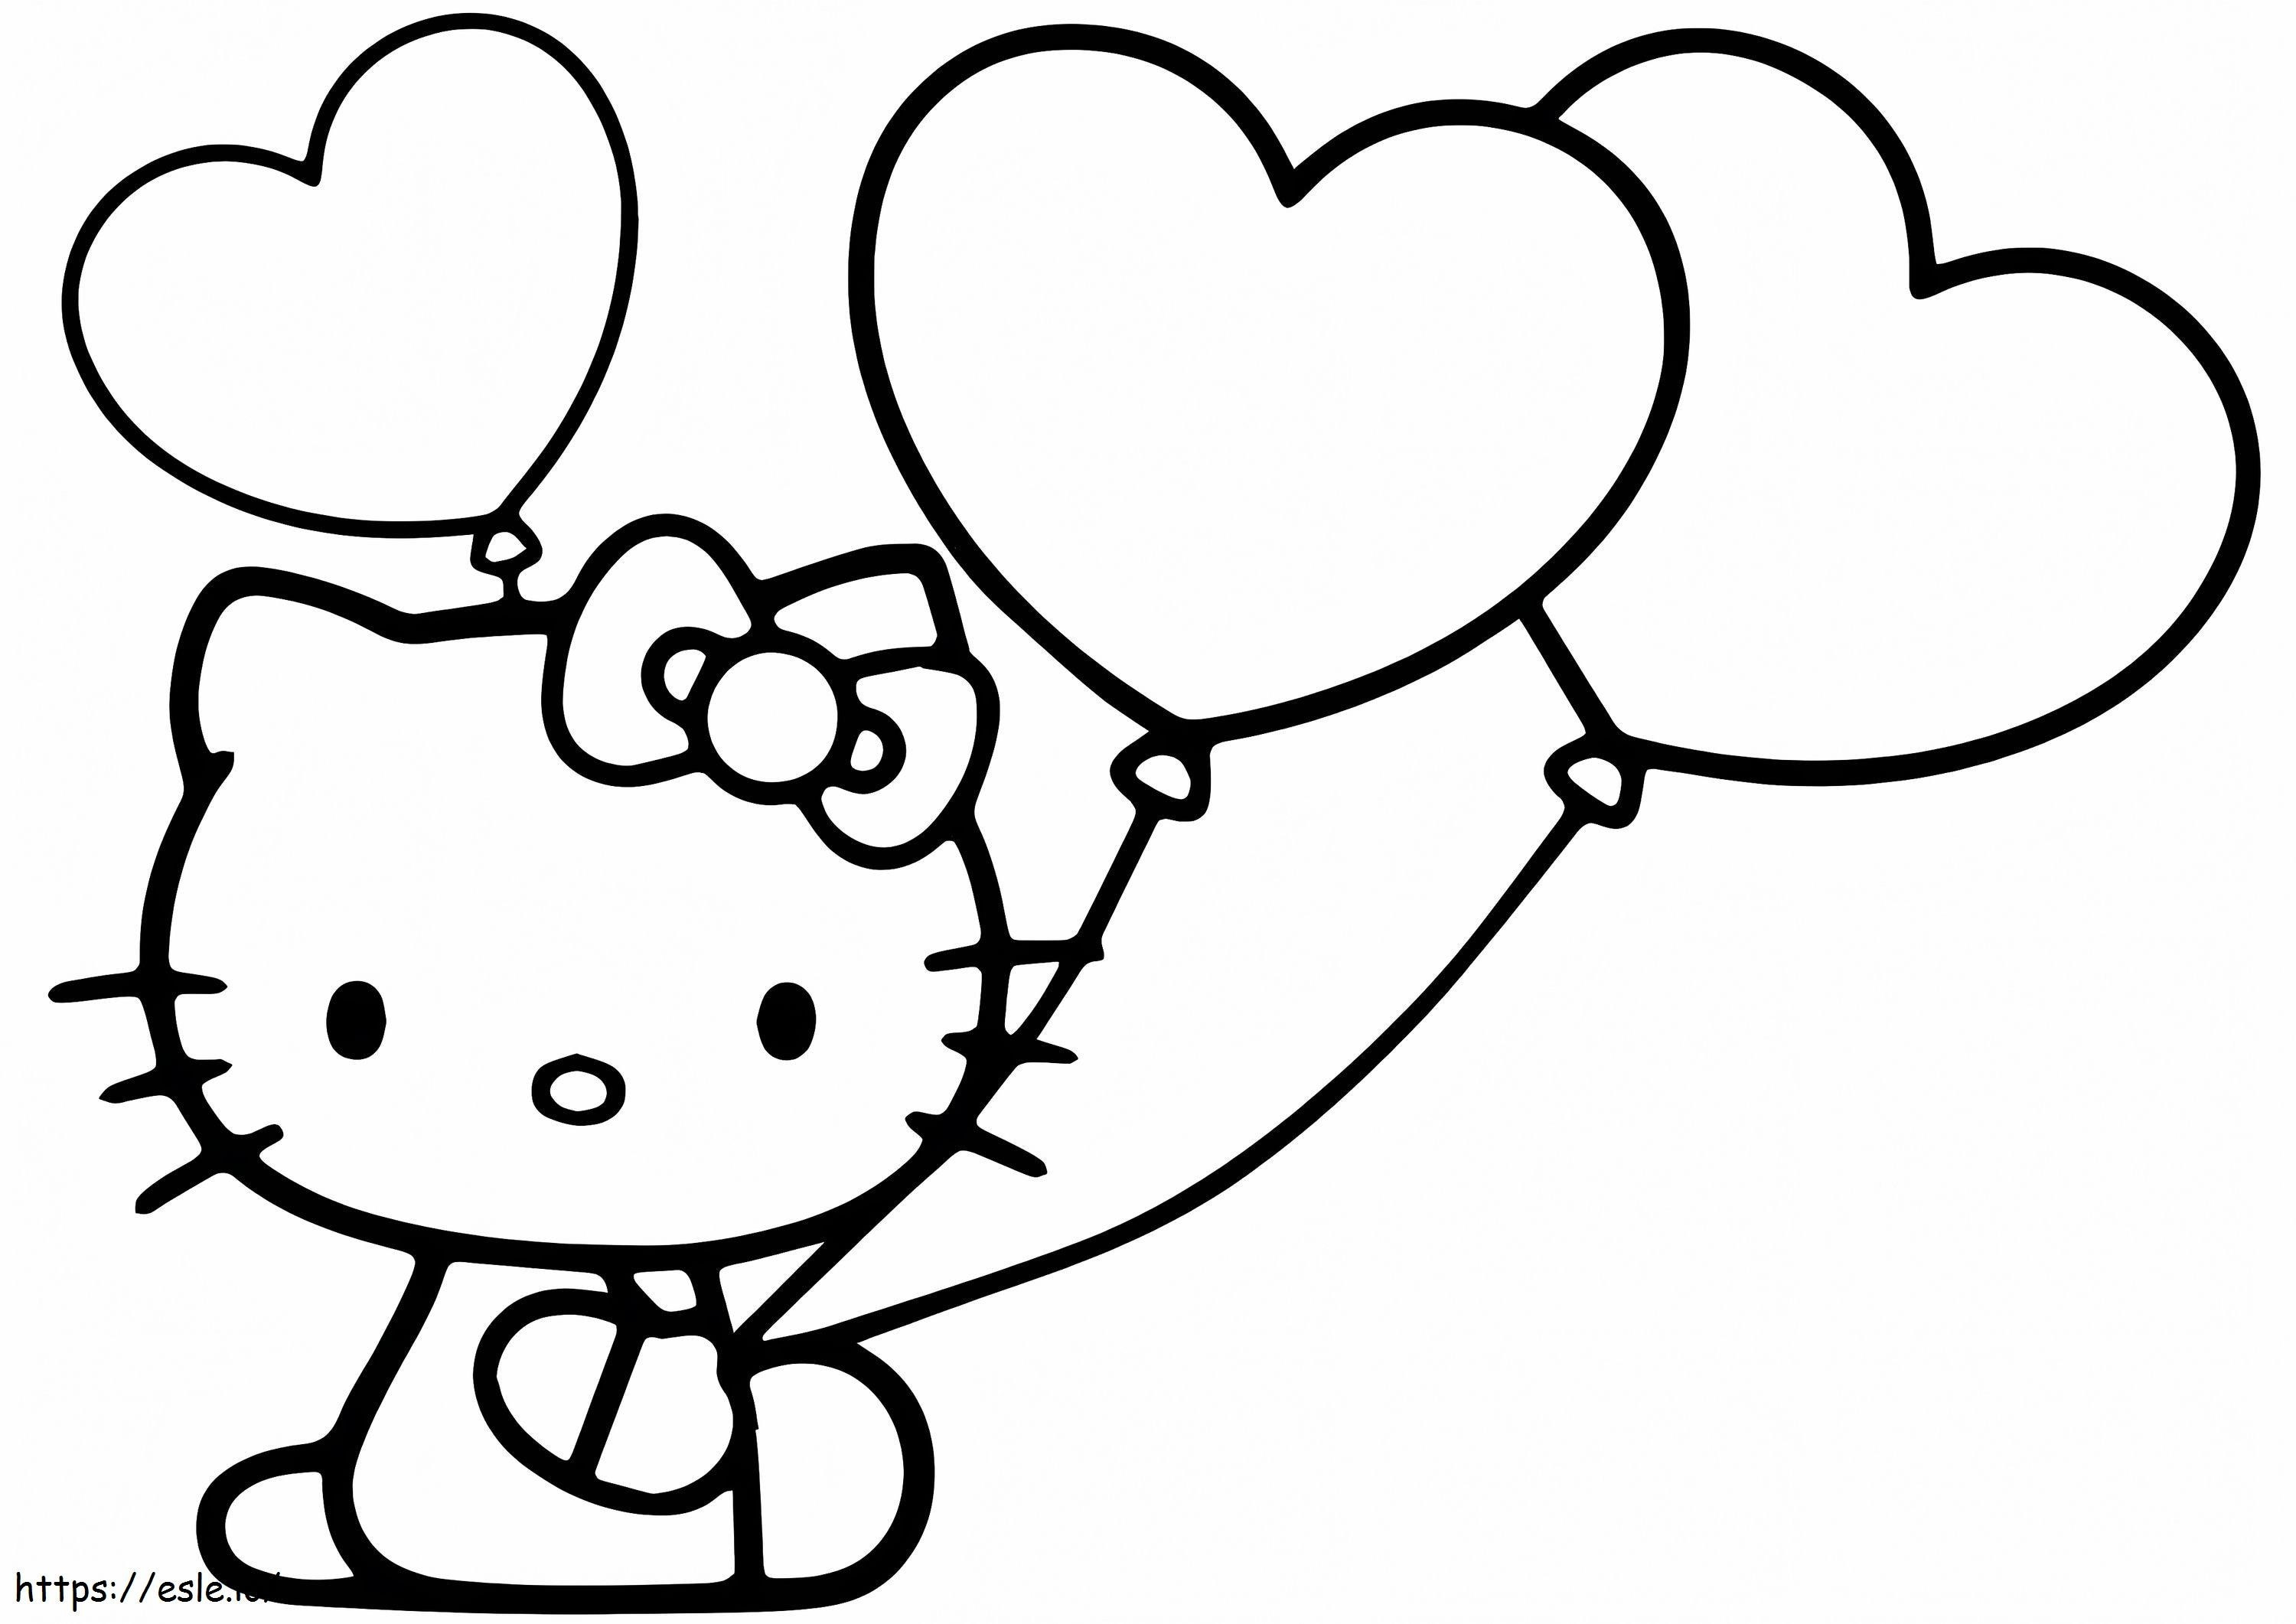 Hello Kitty con palloncini a cuore da colorare